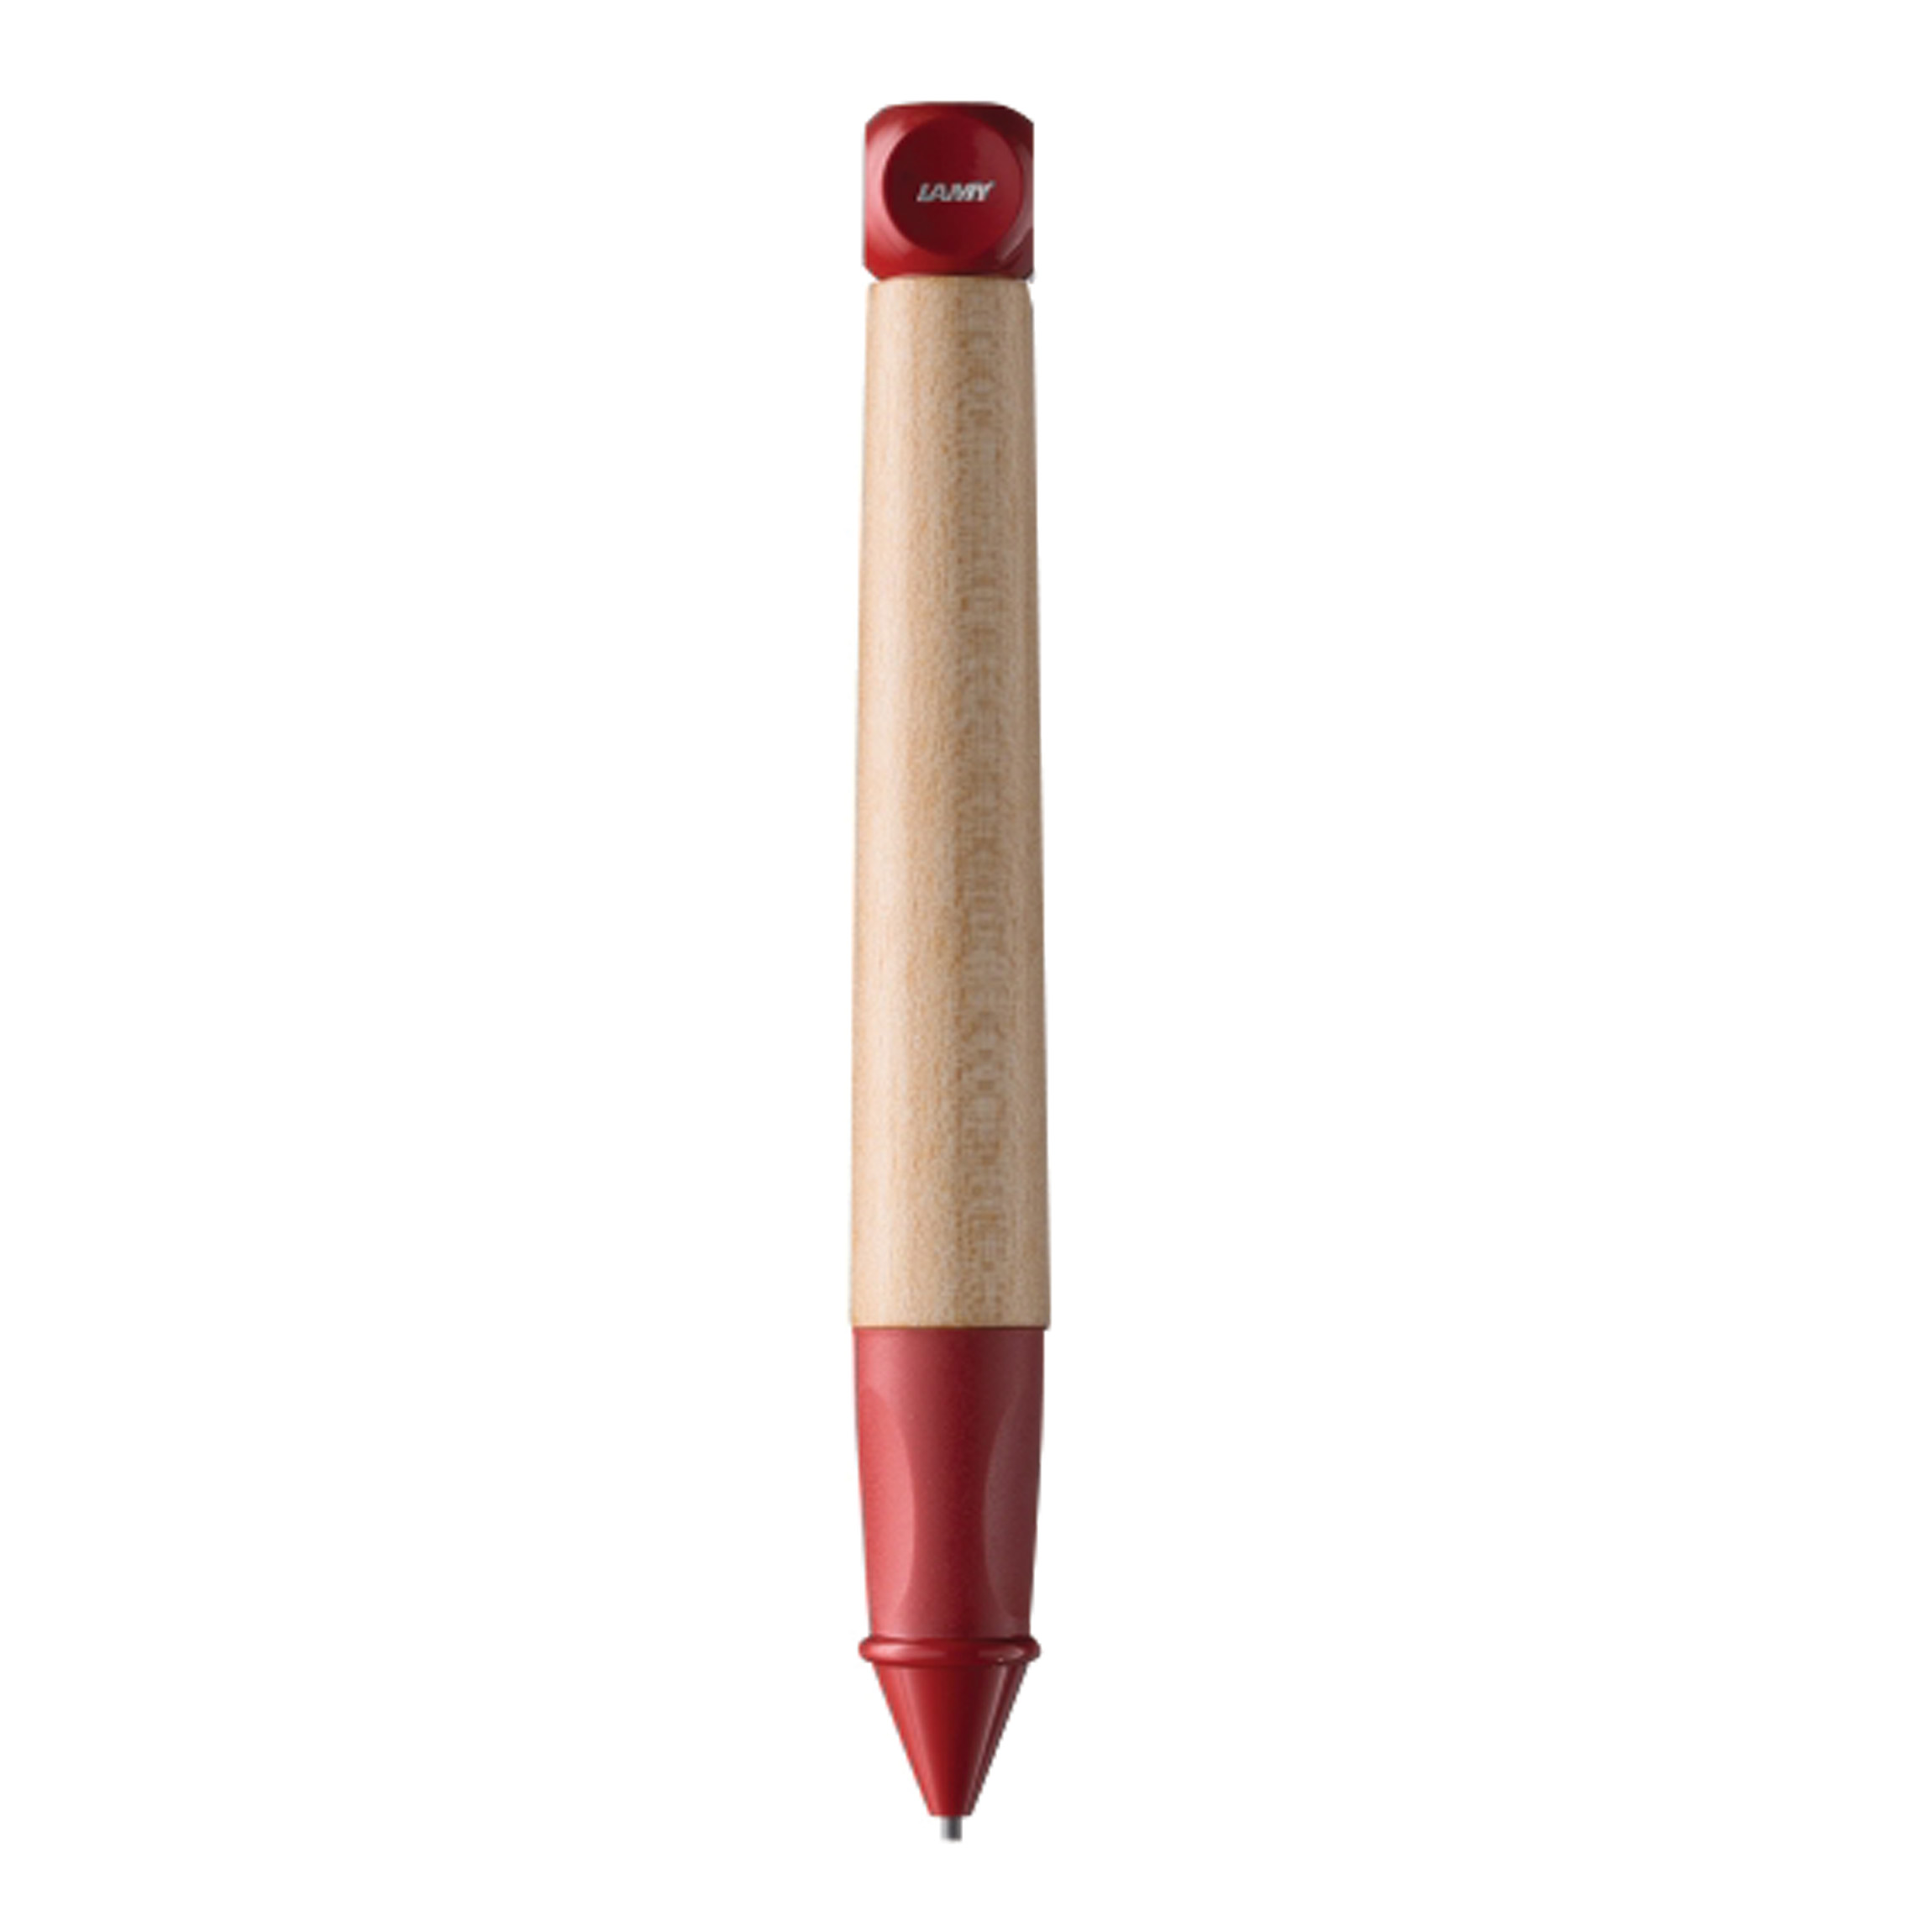 مداد نوکی 1.4 میلی متری لامی مدل ABC کد 110